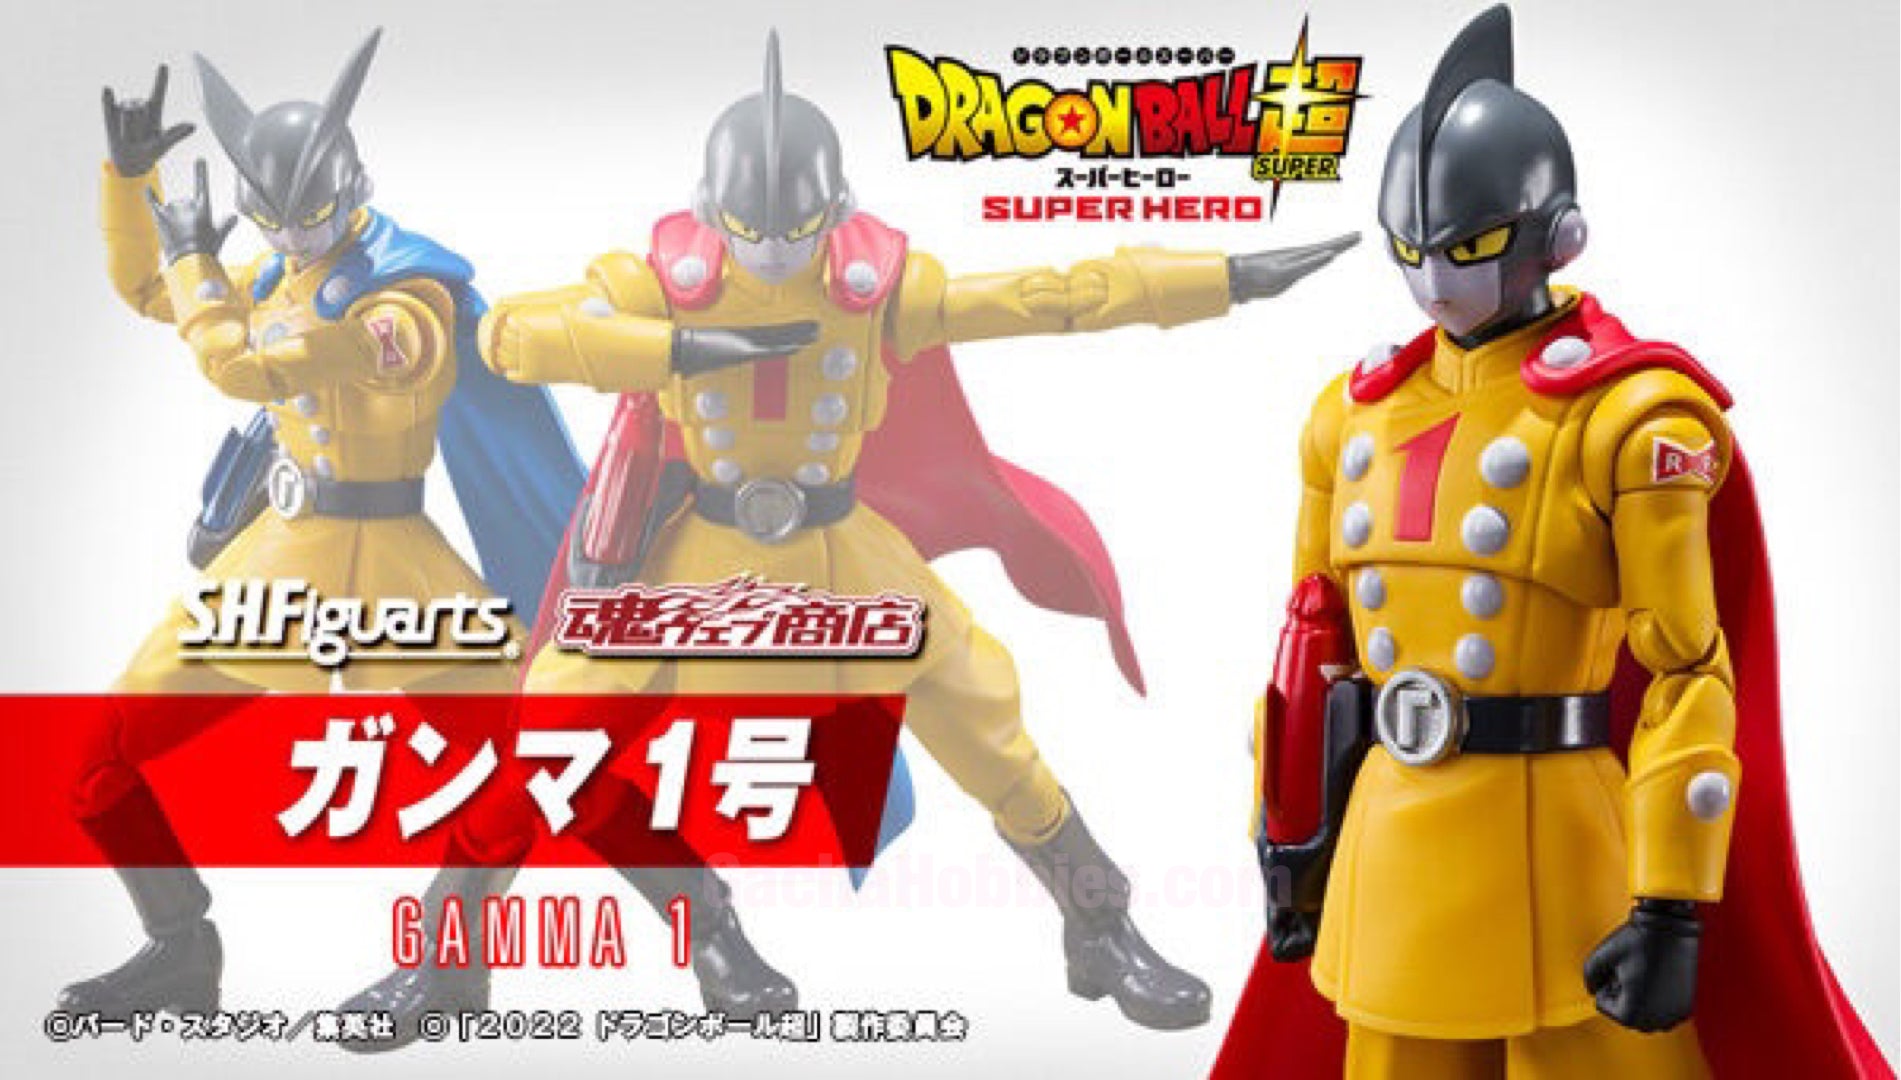 Dragon Ball Super / Figurine Gamma 1 Super Hero S.H.Figuarts